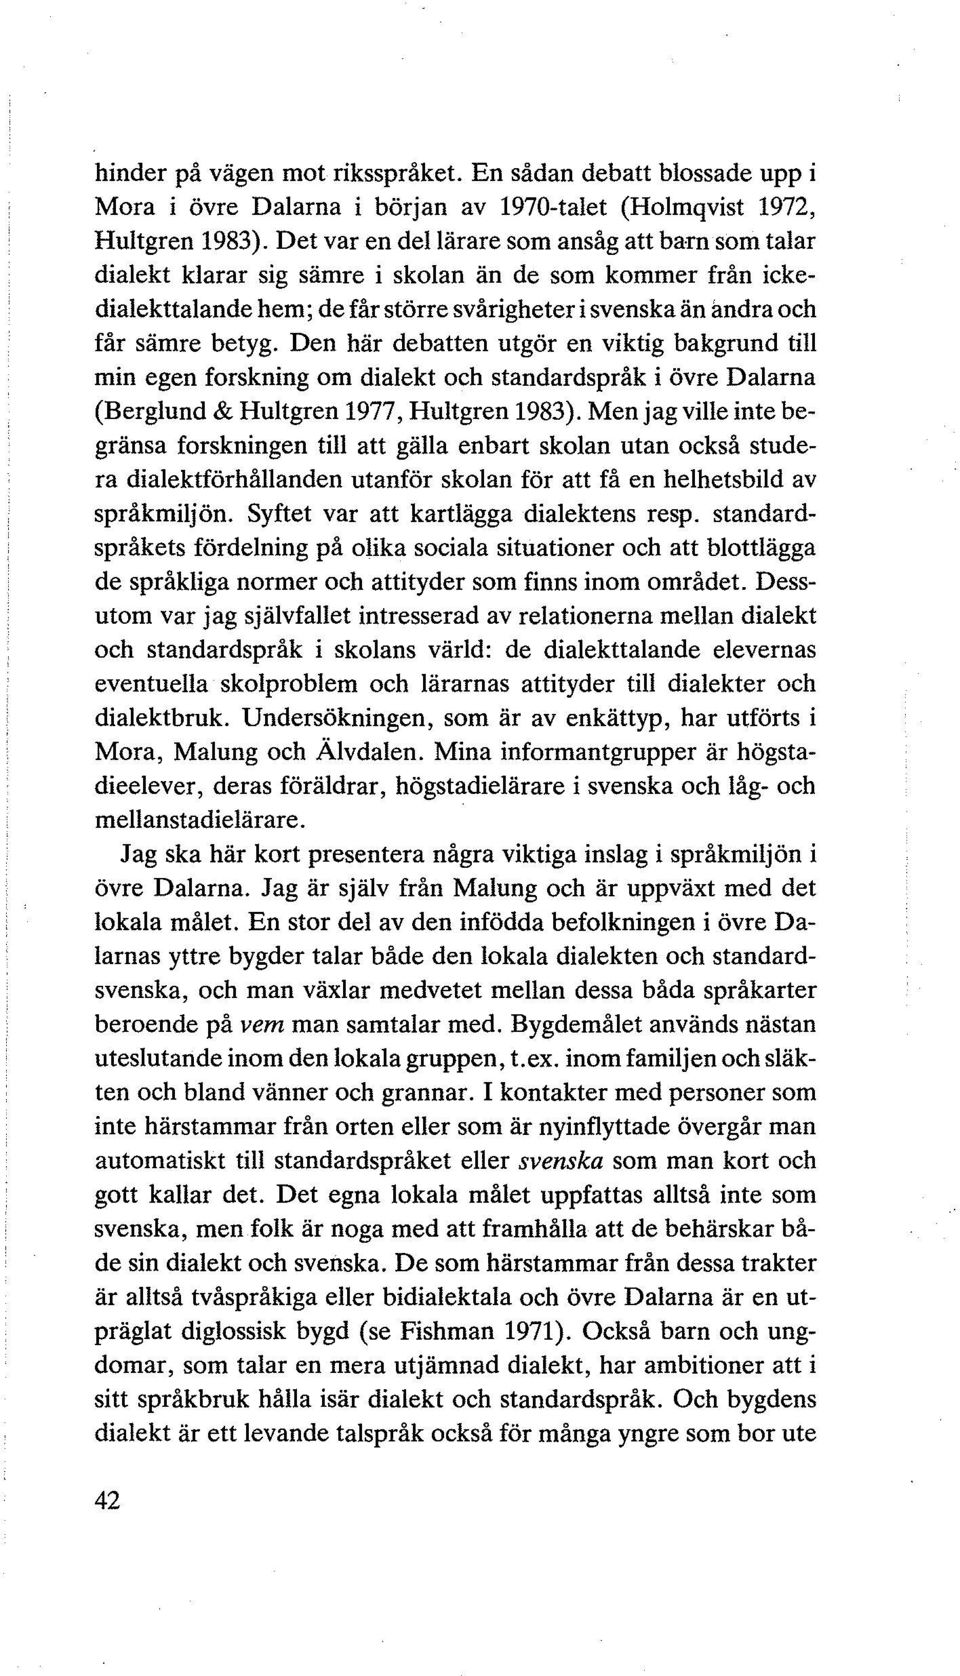 Den här debatten utgör en viktig bakgrund till min egen forskning om dialekt och standardspråk i övre Dalarna (Berglund & Hultgren 1977, Hultgren 1983).